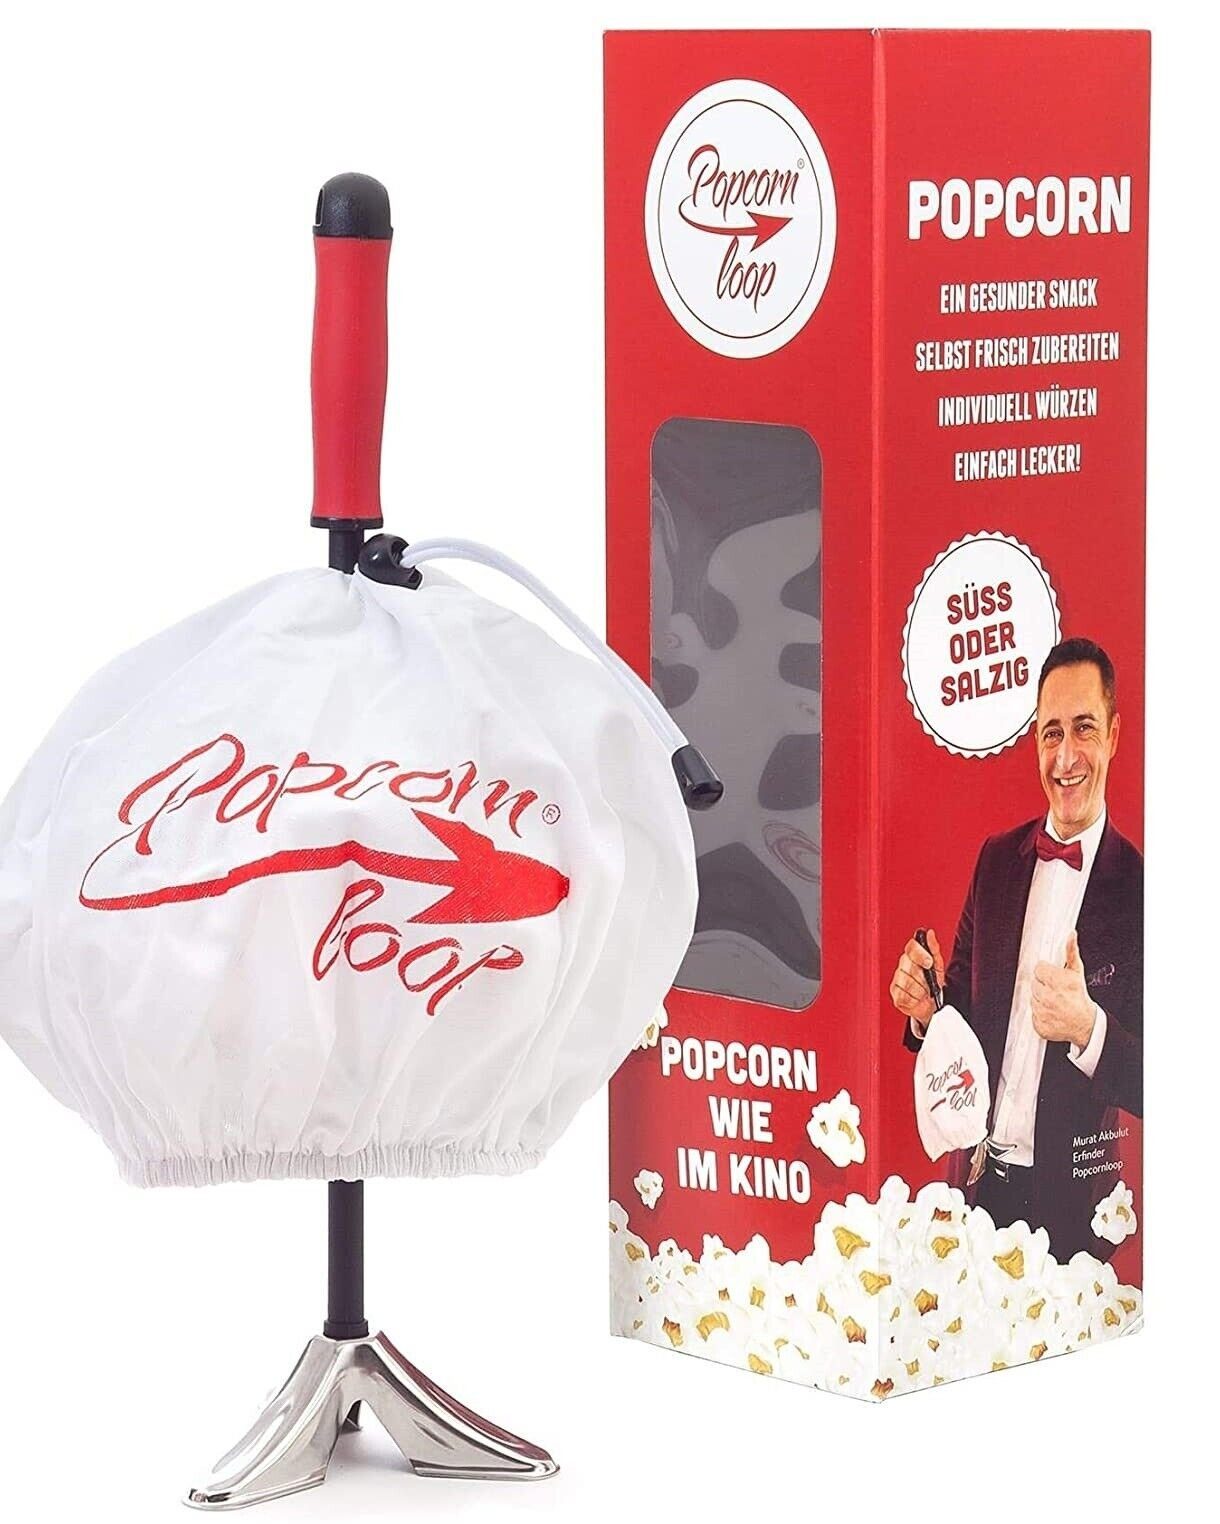 Popcornmaker Original Popcornloop für Popcornzubereiter Popcorn Zuhause, Mais Popcornmaschine Popcornloop frischer Popcornmaschine Heimkino